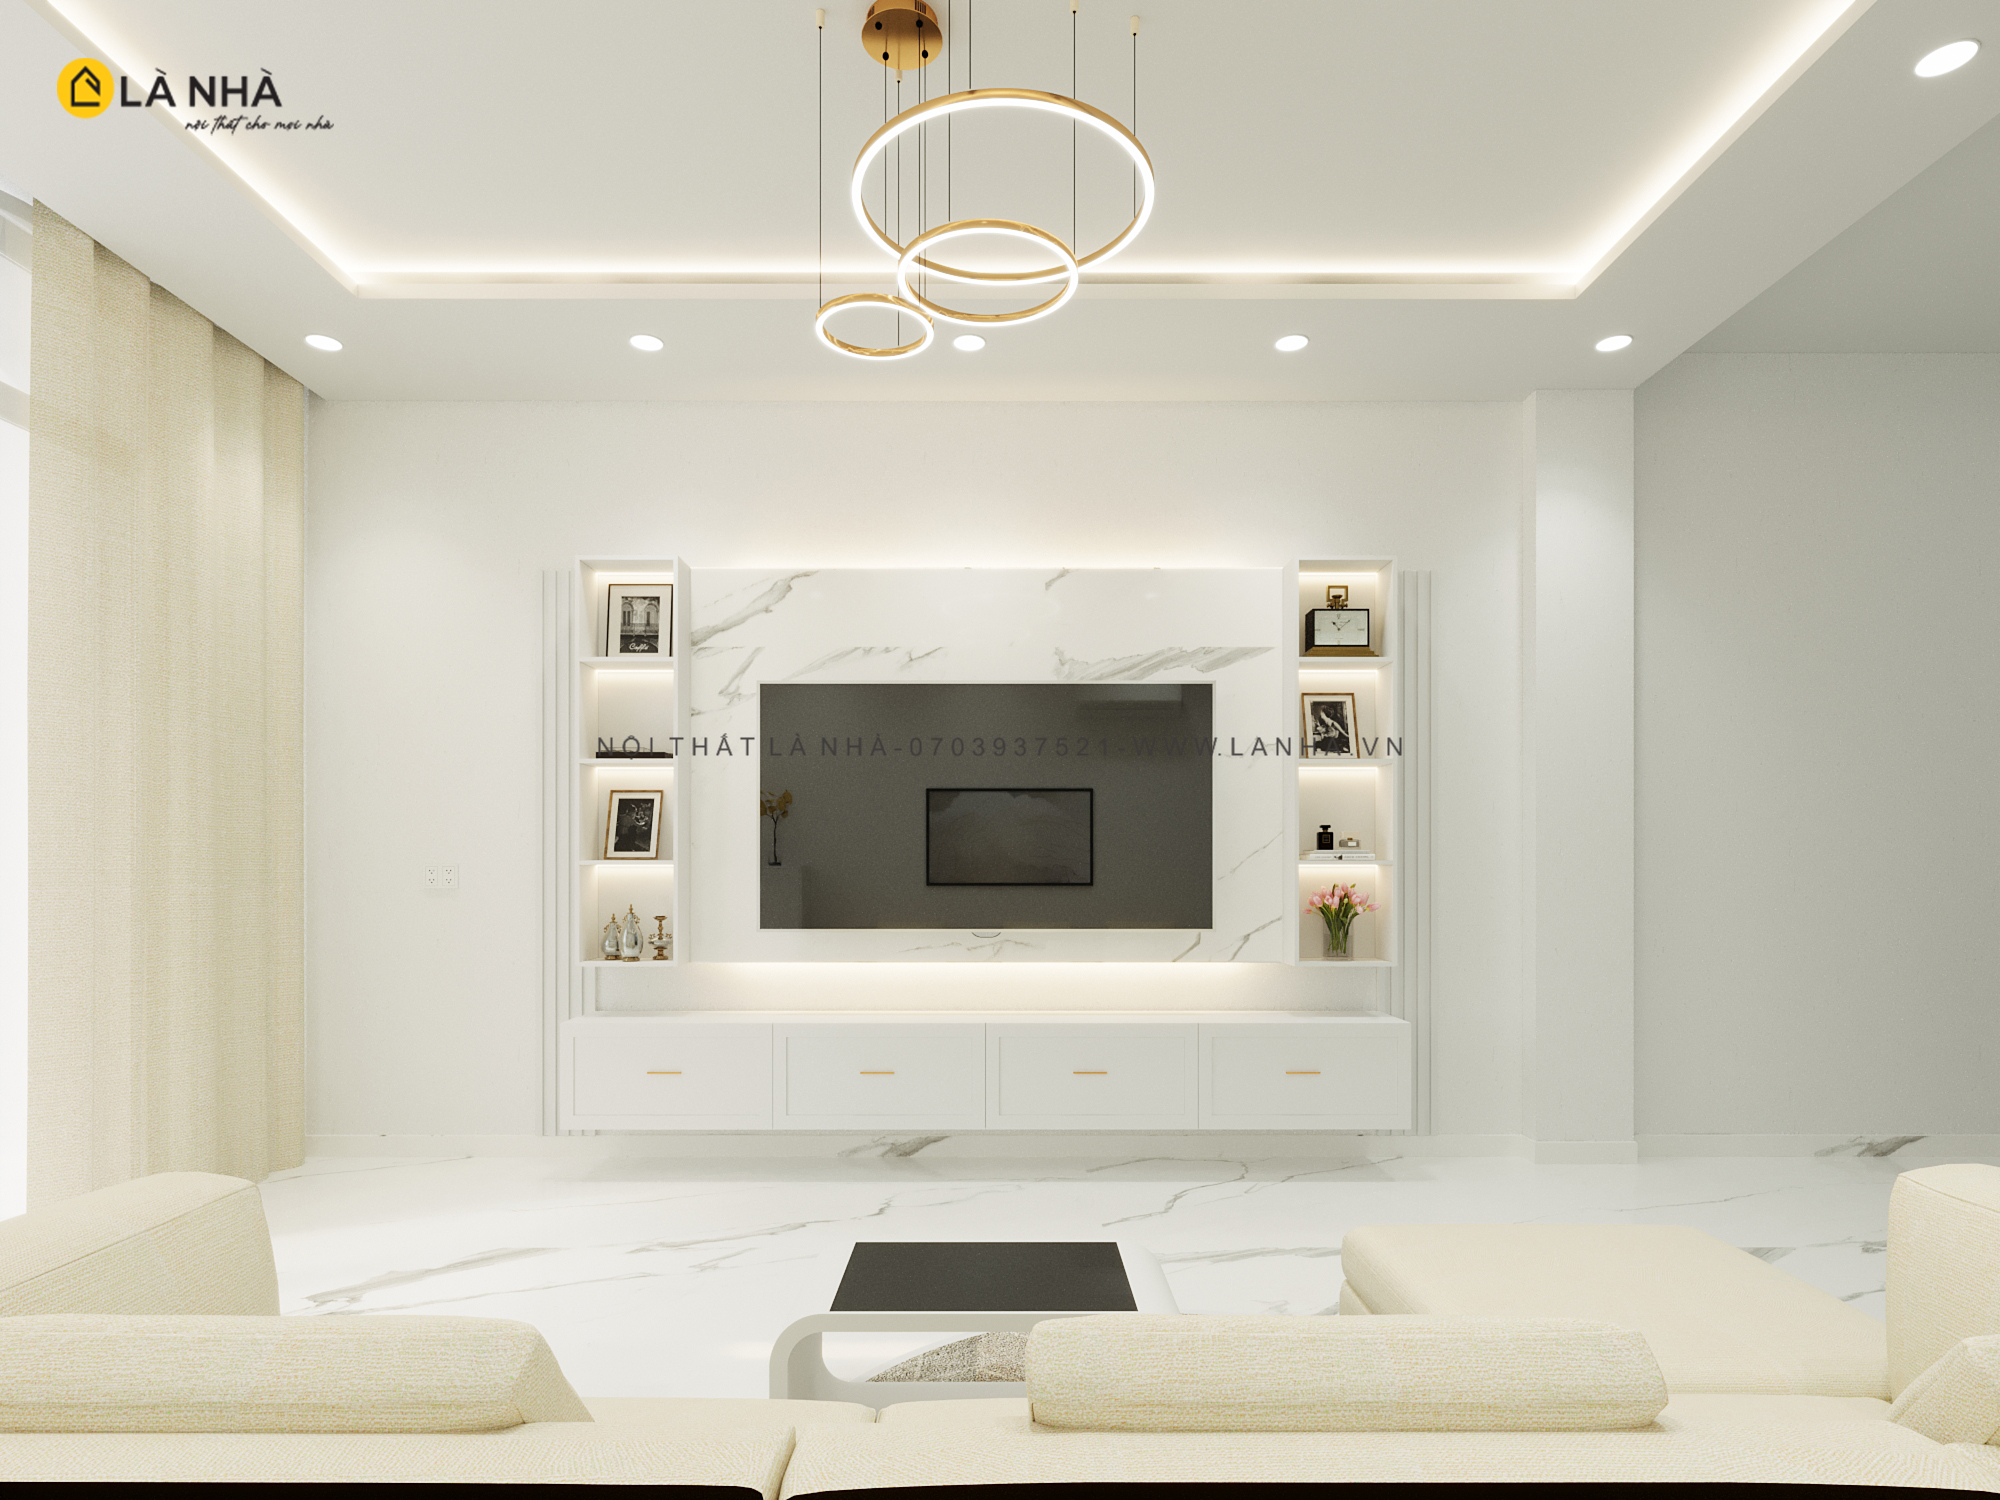 Màu trắng và các tông màu như xám, be, hoặc màu nâu nhạt giúp phản chiếu ánh sáng và tạo sự rộng rãi hơn cho phòng khách